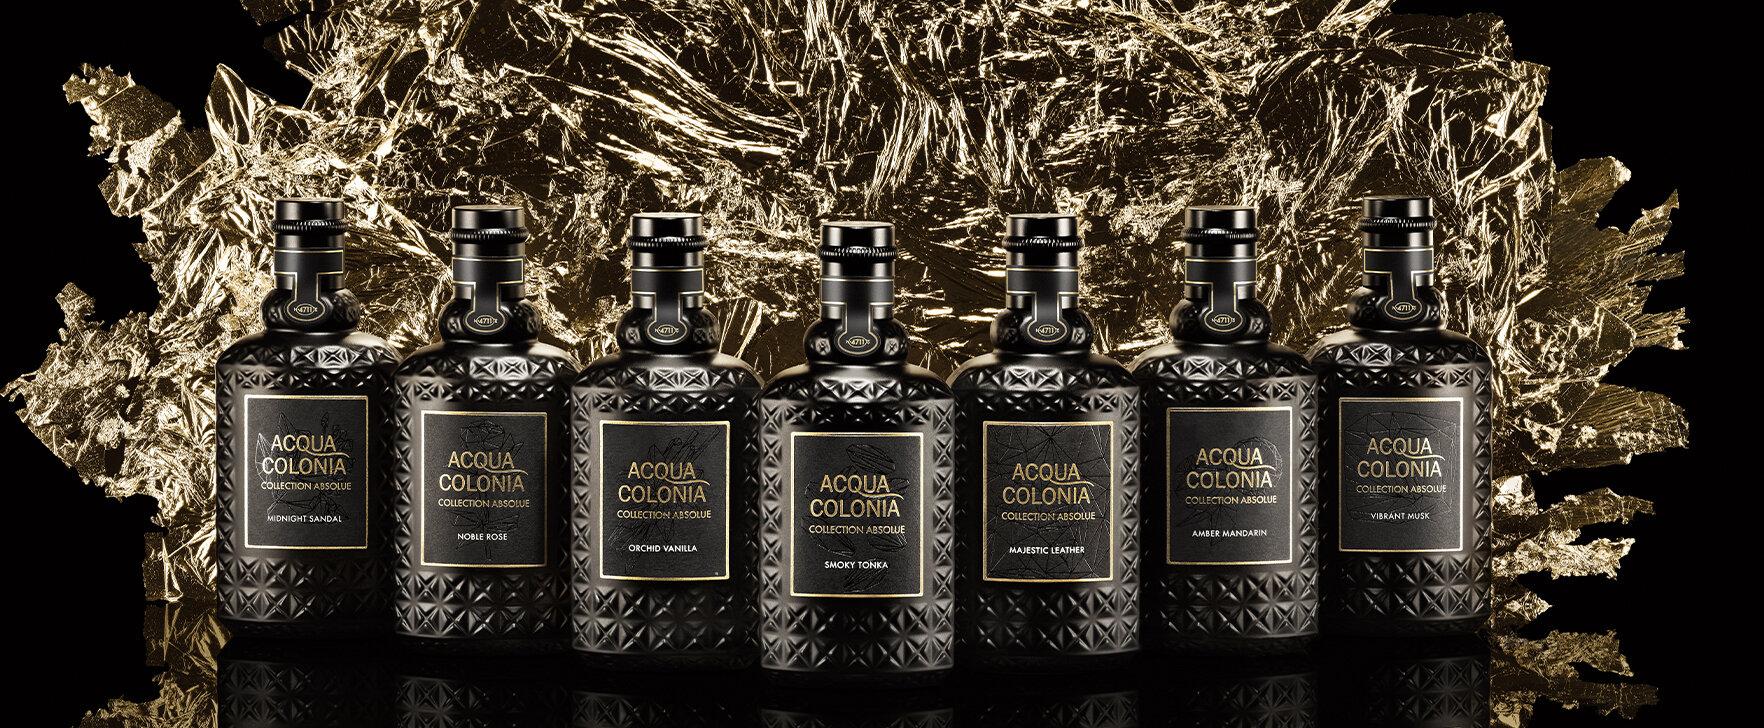 Eine Ode an die Haute Parfumerie: Die neue „Acqua Colonia Collection Absolue“ von 4711